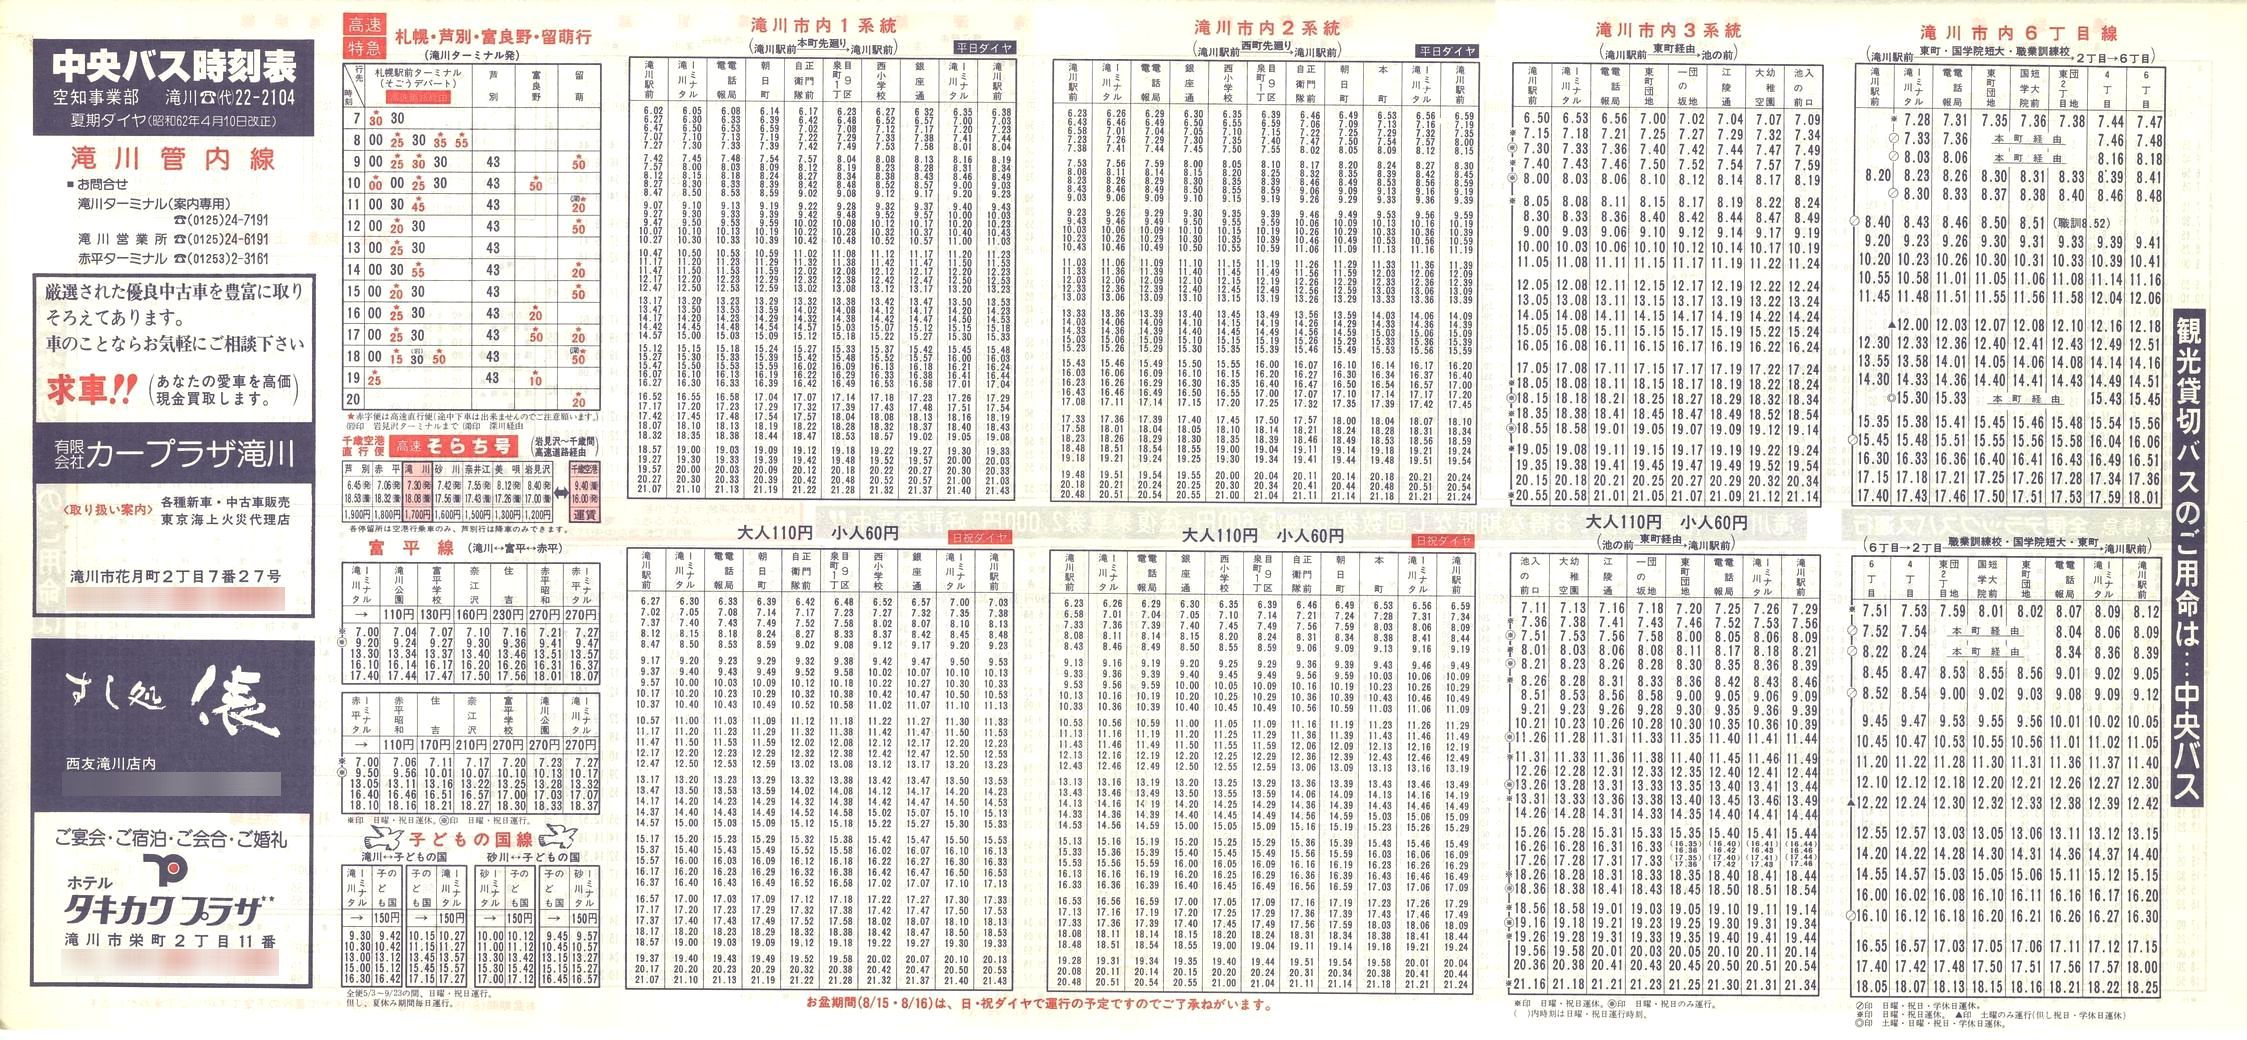 1987-04-10改正_北海道中央バス(空知)_滝川管内線時刻表表面